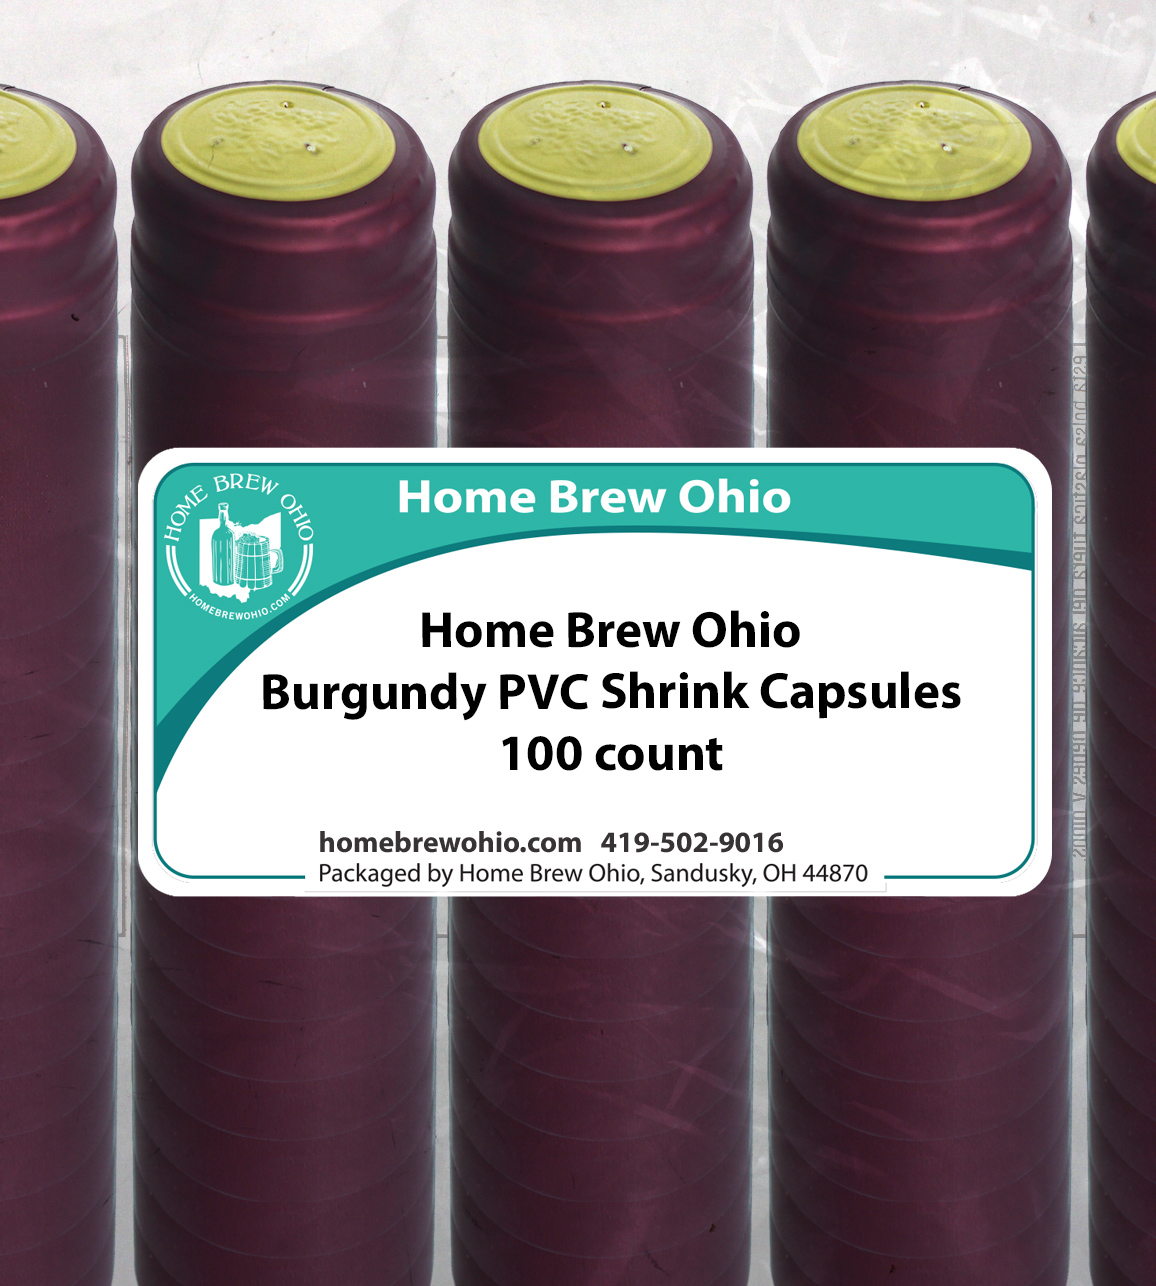 HOME BREW OHIO HOMEBREWOHIO.COM Home Brew Ohio Burgundy PVC Shrink Capsules 100 count